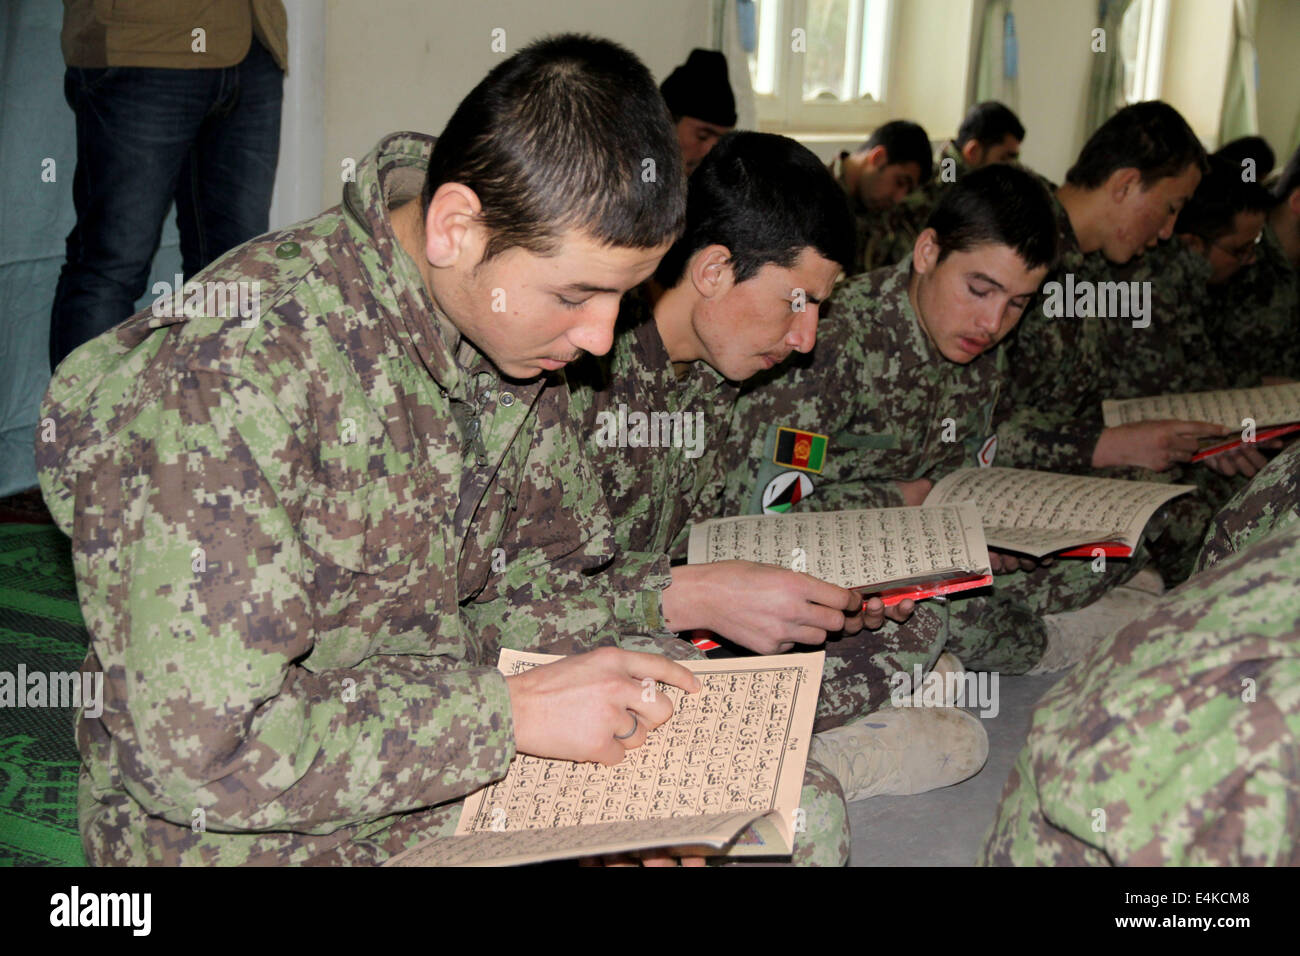 La province de Balkh, en Afghanistan. 14 juillet, 2014. Les soldats de l'Armée nationale afghane lire le Coran dans une mosquée dans leur camp militaire pendant le mois sacré du Ramadan dans la province de Balkh, dans le nord de l'Afghanistan, le 14 juillet 2014. © Azorda/Xinhua/Alamy Live News Banque D'Images